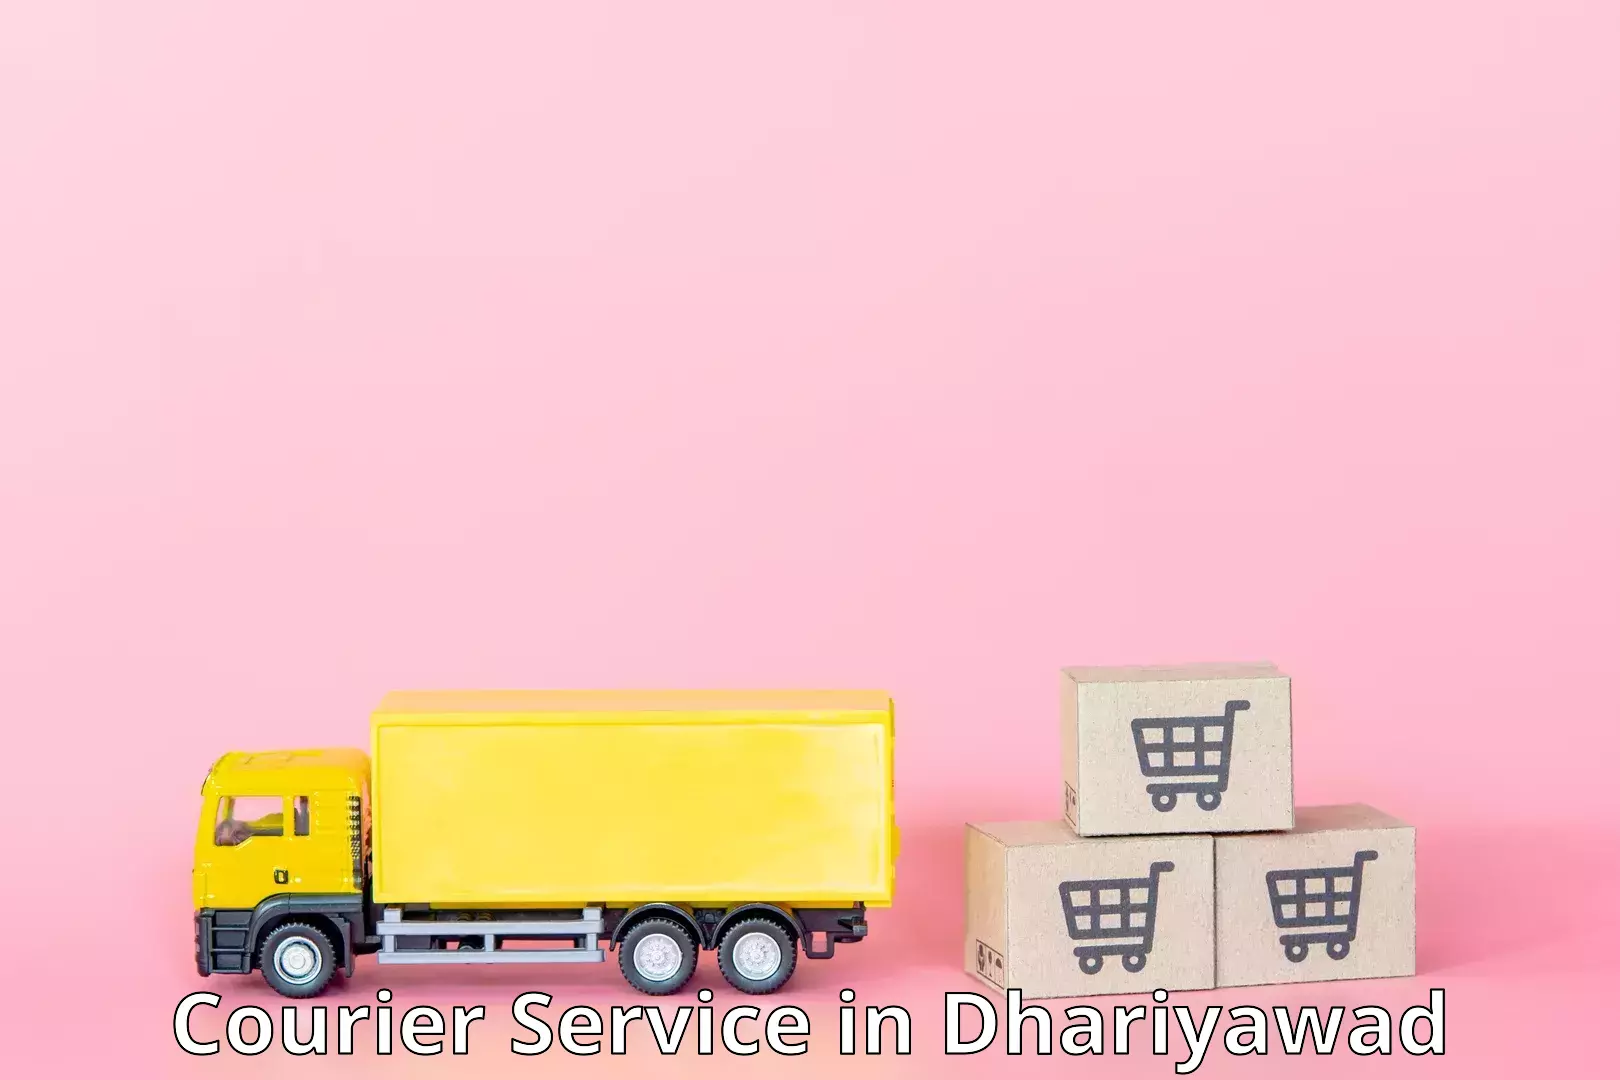 Express package handling in Dhariyawad